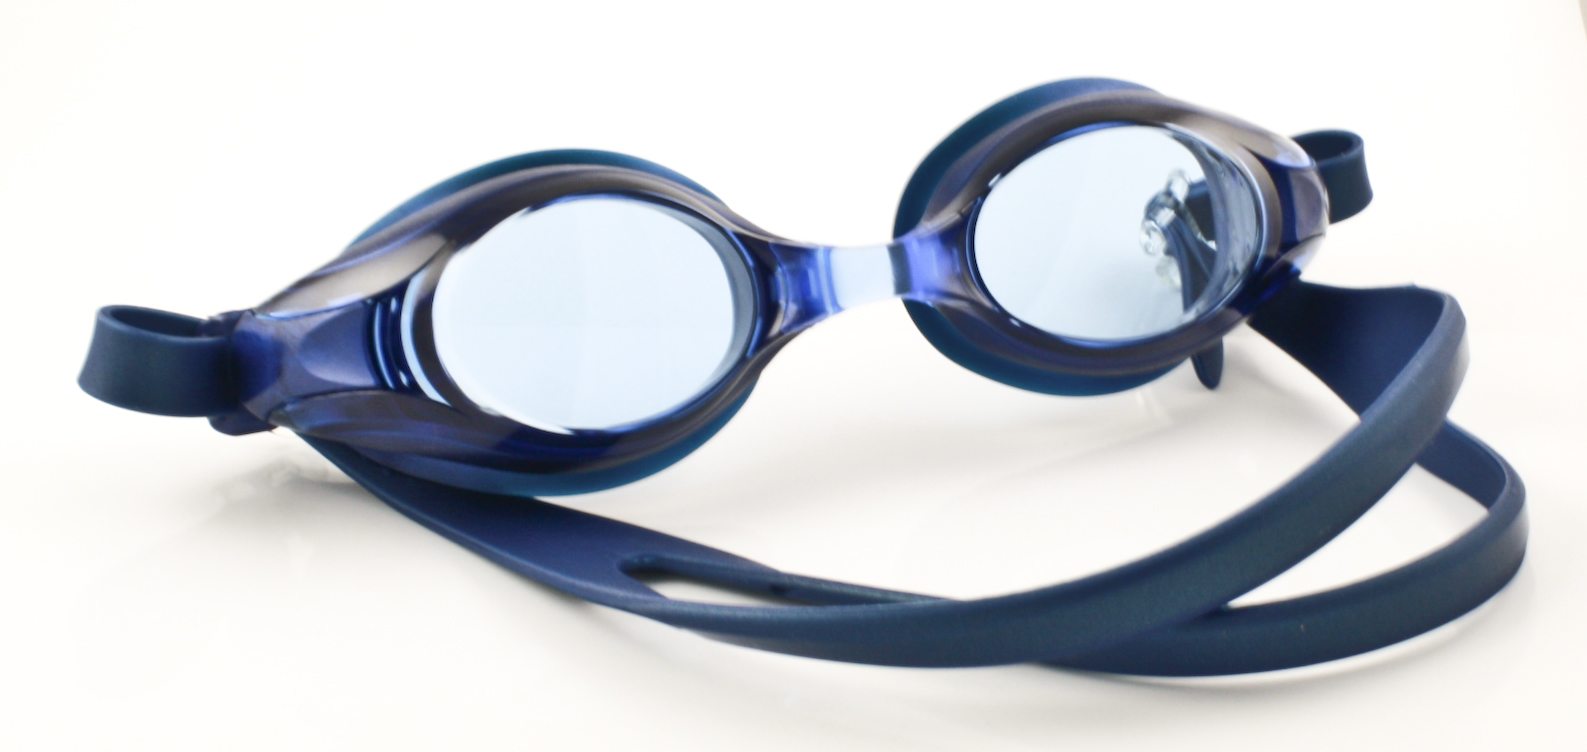 Lunettes de natation unisexe demetz lunettes de natation correctrices  master et coques optiques 3608304004617 - Optic'Eco